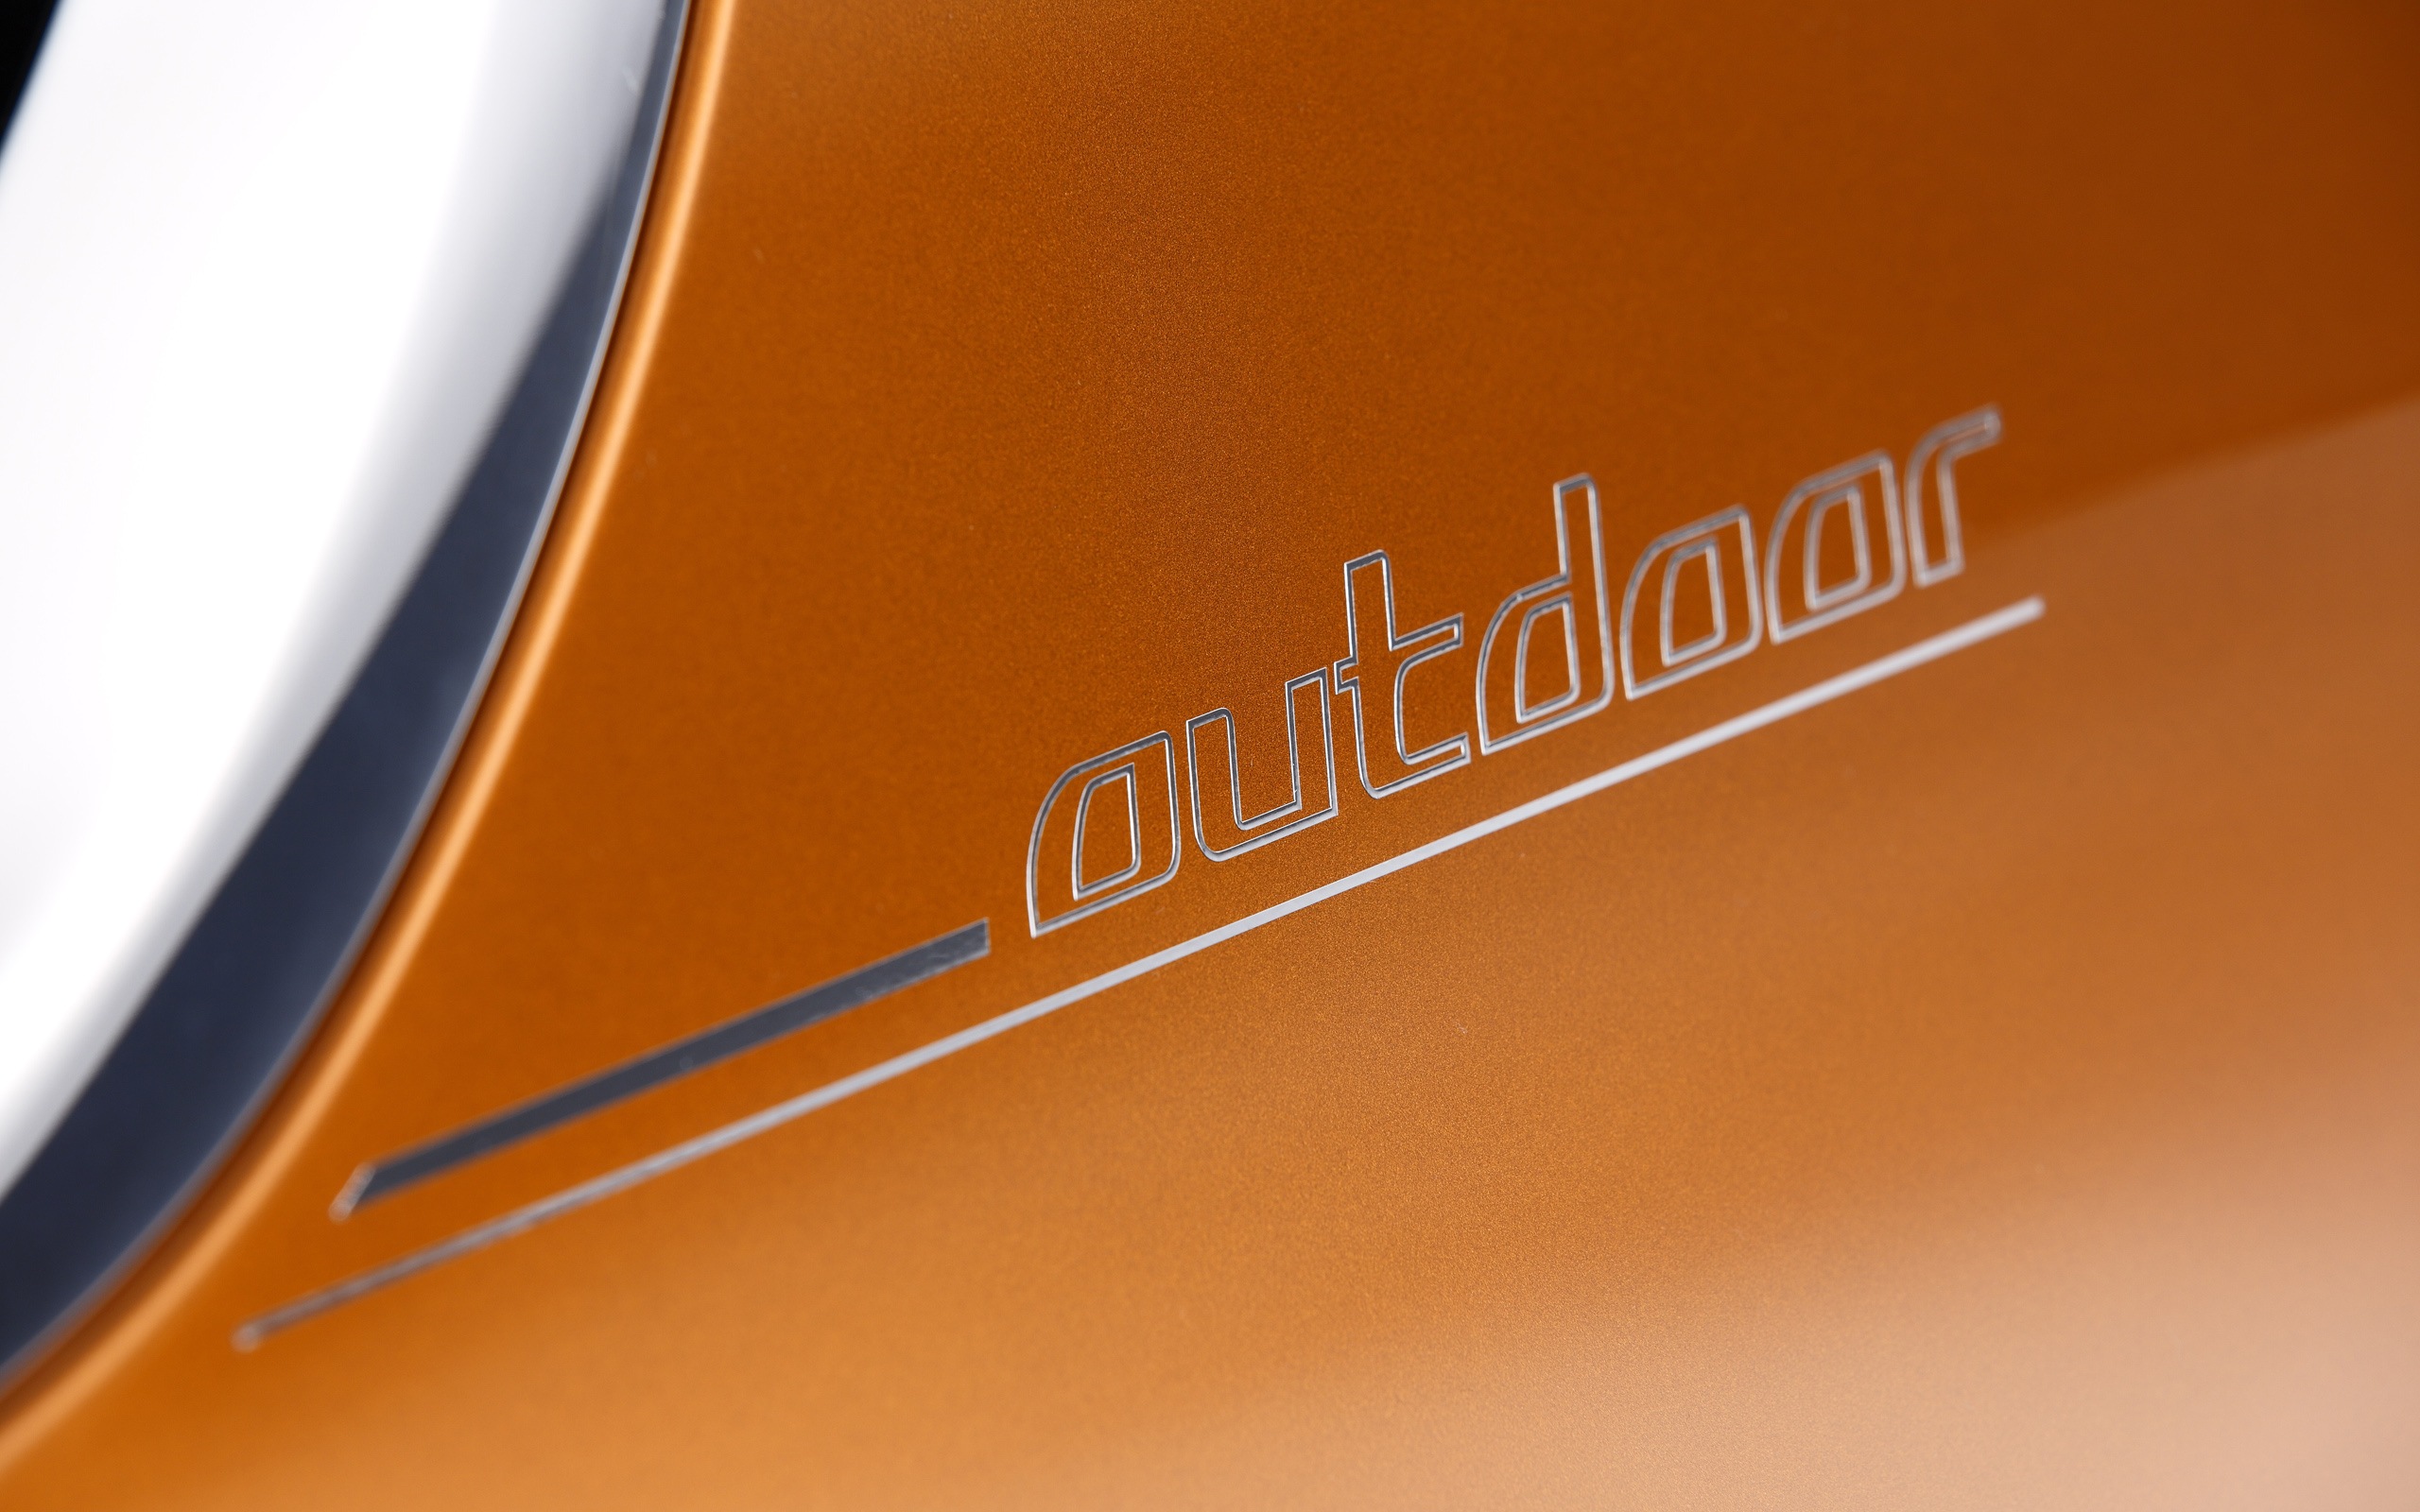 2013 BMW Concept Active Tourer 宝马旅行车 高清壁纸17 - 2560x1600